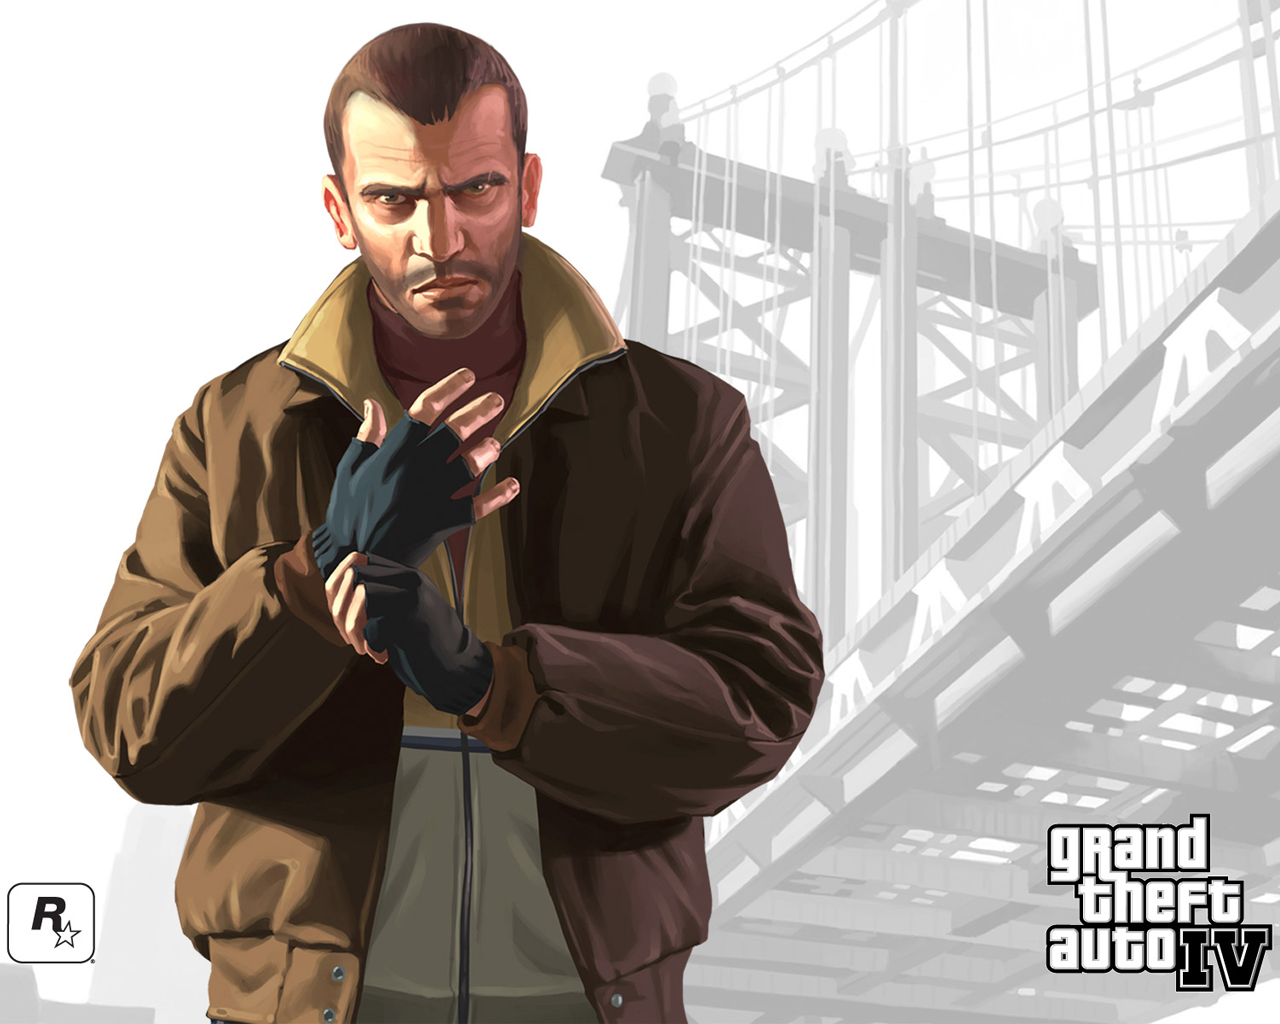 Скачать обои Grand Theft Auto Iv на телефон бесплатно